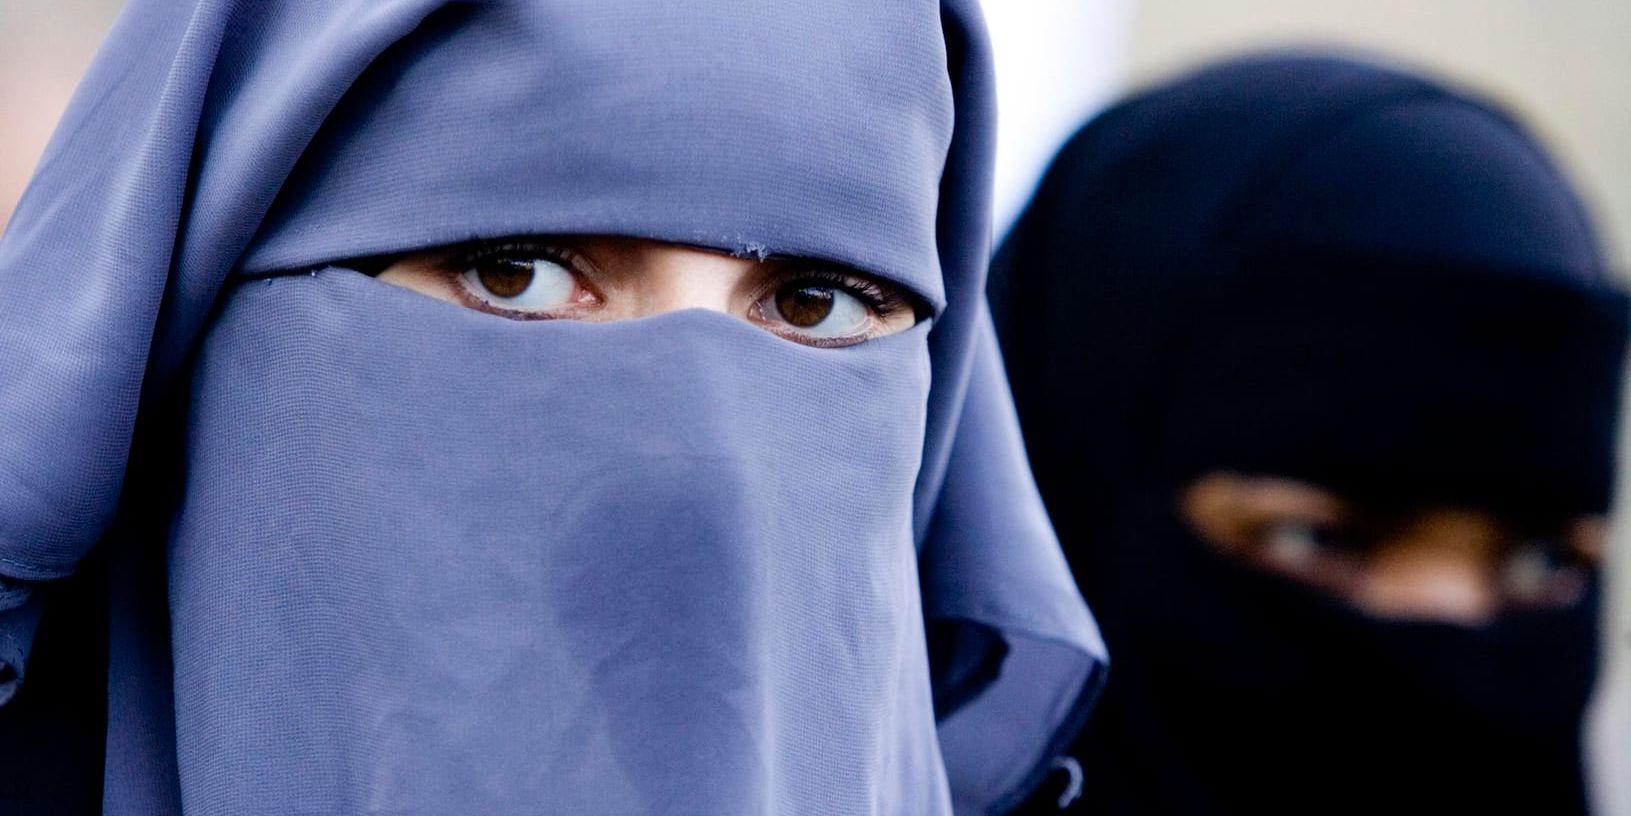 Danmarks regering föreslår att det ska bli förbjudet att bära plagg som täcker ansiktet, som niqab och burka, i det offentliga rummet. Arkivbild.